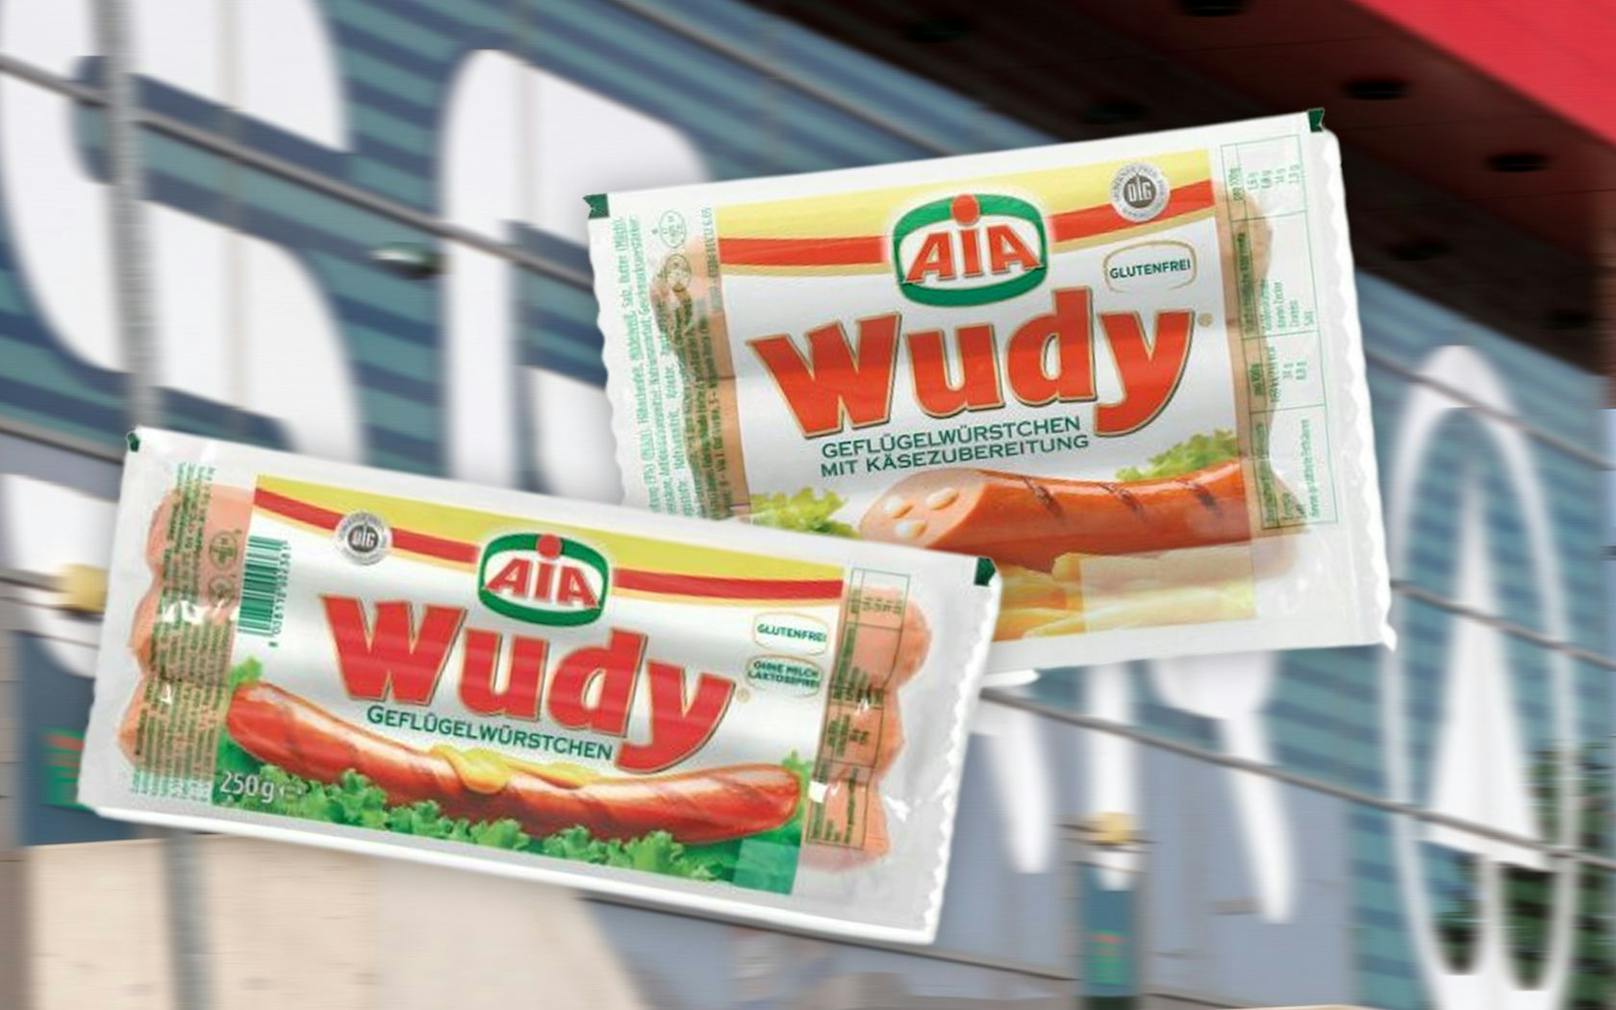 Wudy-Würstchen des Herstellers&nbsp;AIA – Agricola Italiana Alimentare S.p.A. werden zurückgerufen.